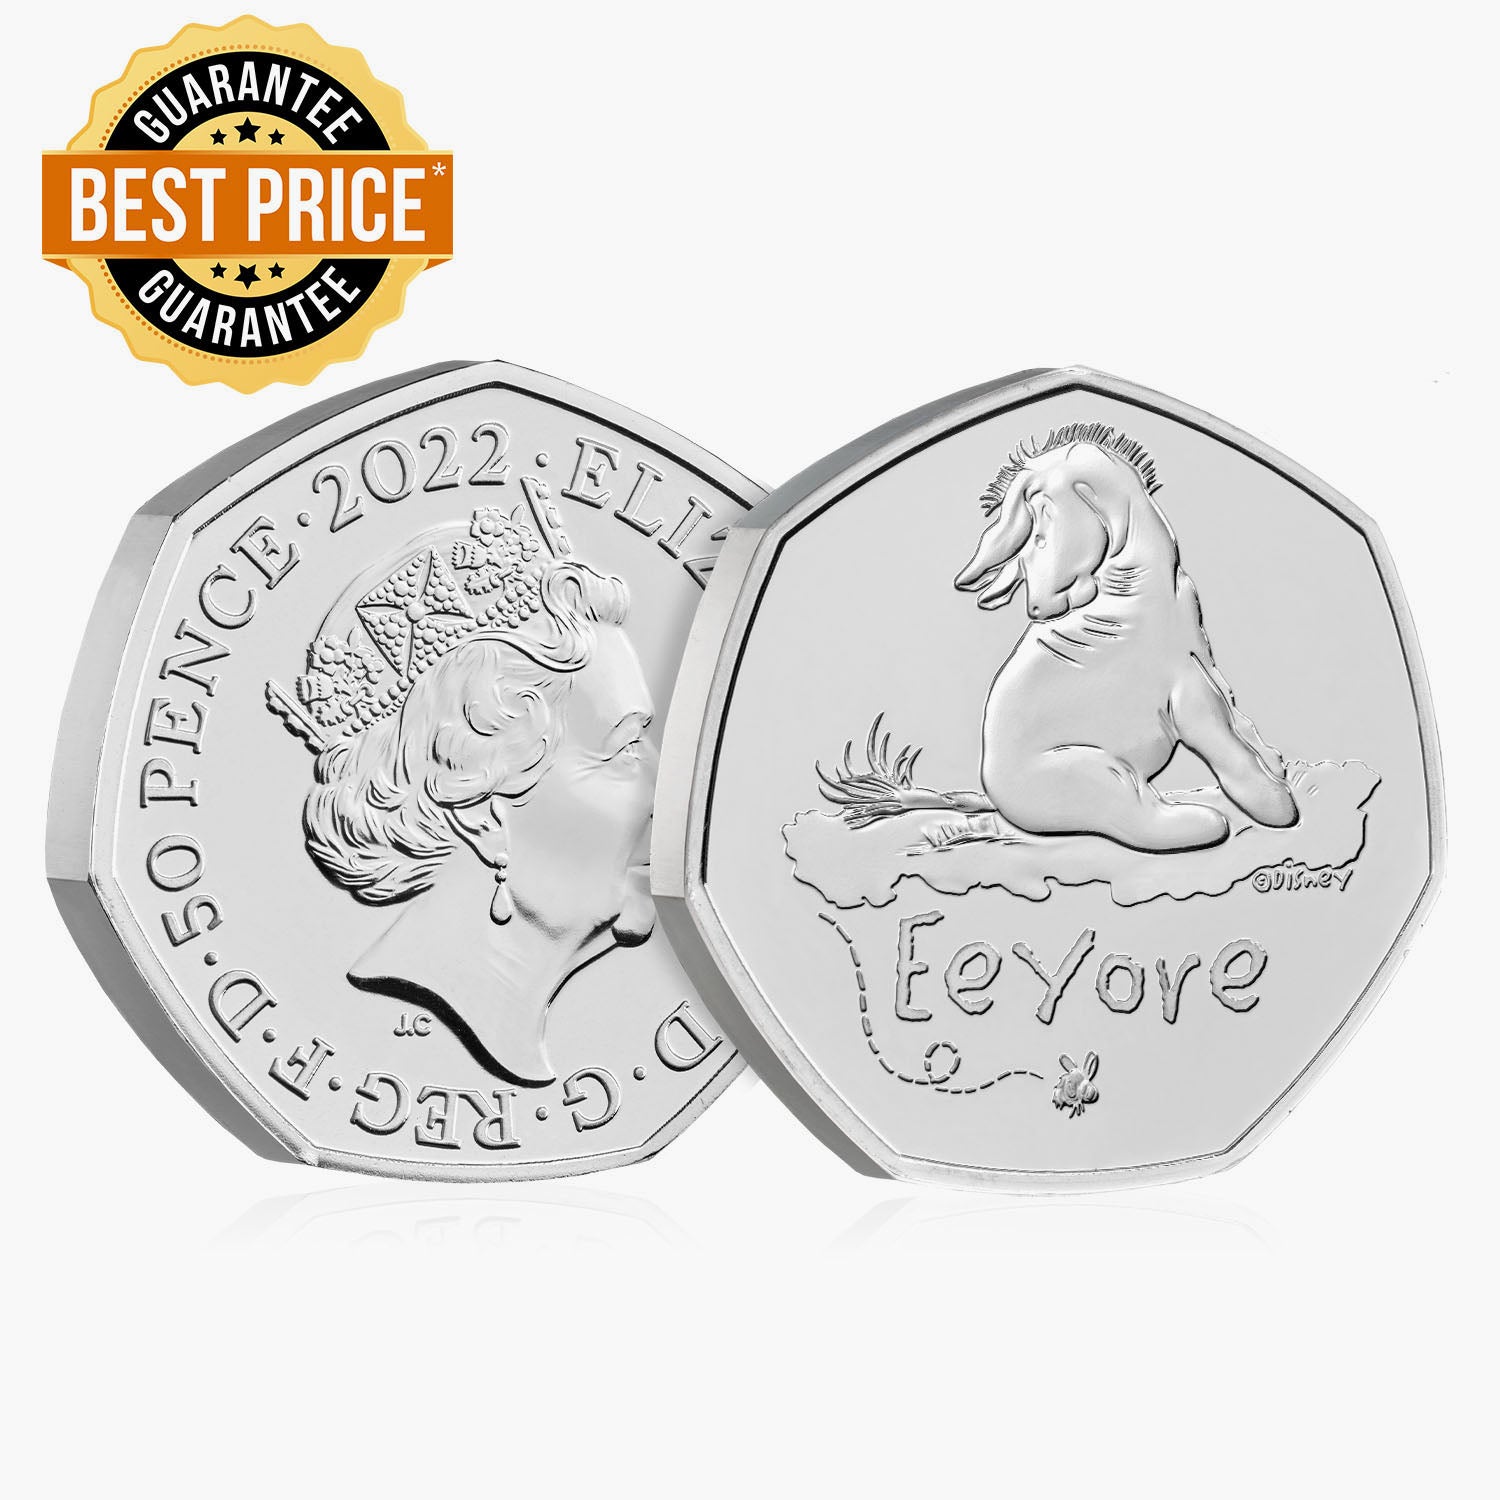 Eeyore 2022 UK 50p Brilliant Uncirculated Coin